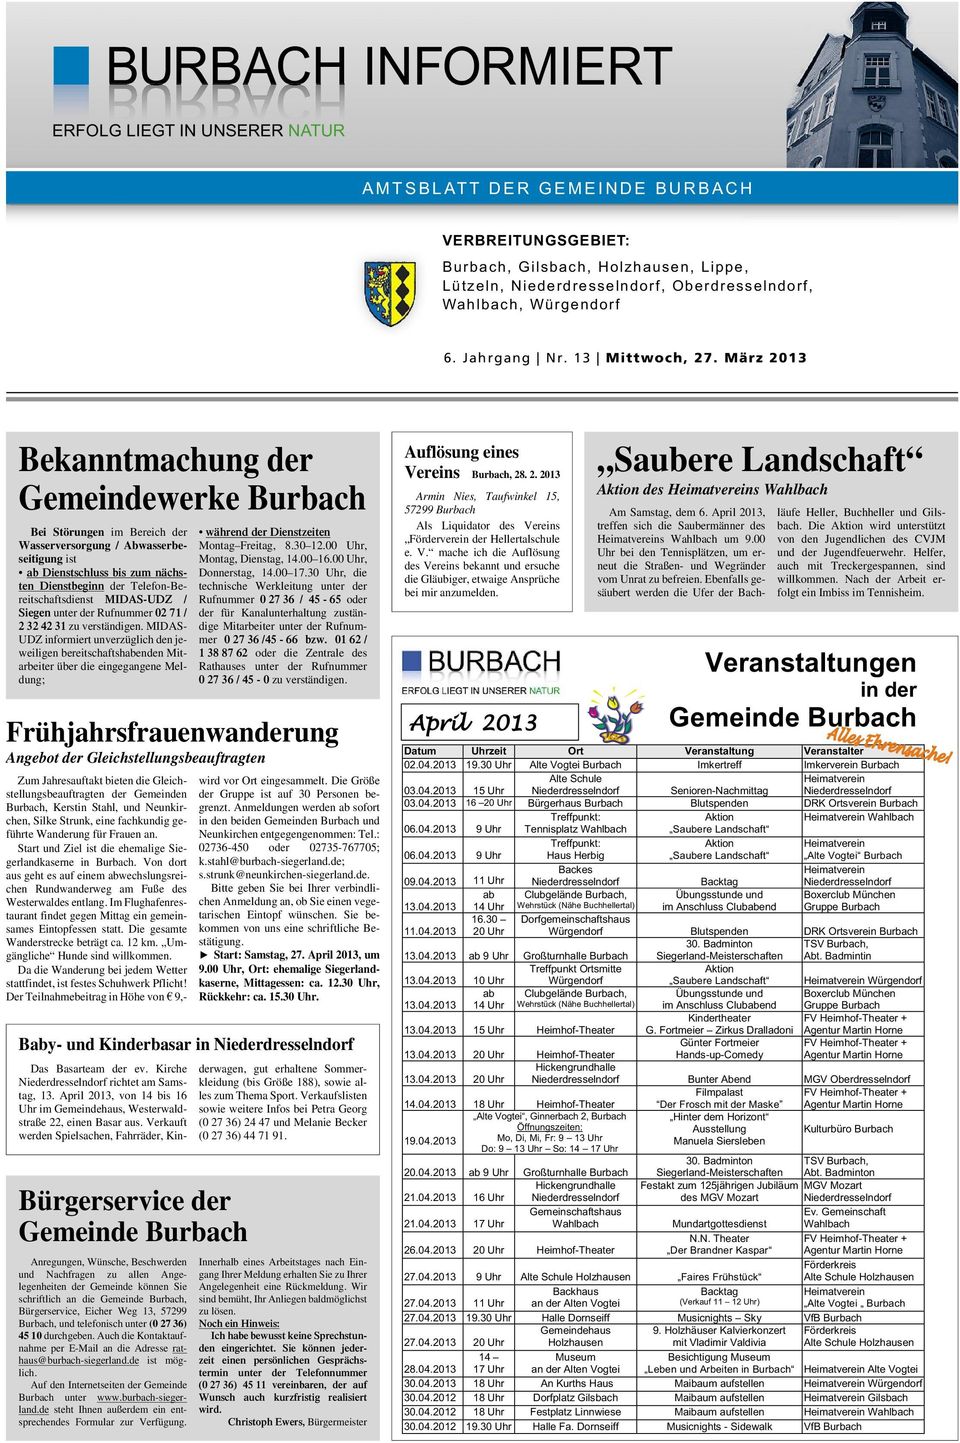 März 2013 Bekanntmachung der Gemeindewerke Burbach Bei Störungen im Bereich der Wasserversorgung / Abwasserbeseitigung ist ab Dienstschluss bis zum nächsten Dienstbeginn der